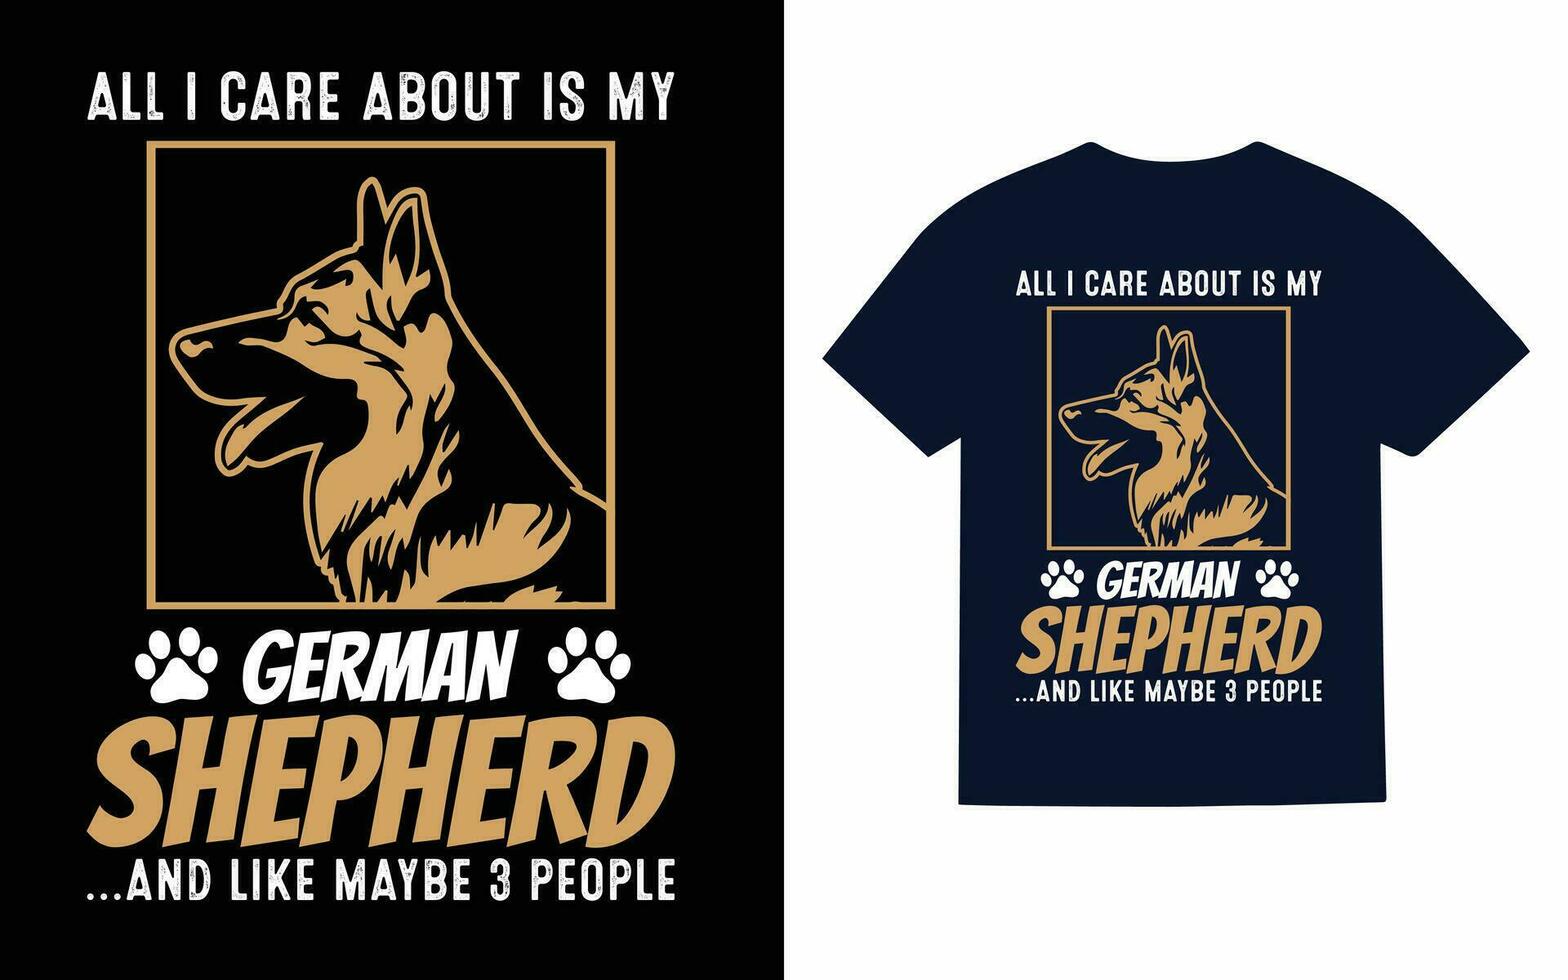 alemán pastor perro tipografía camiseta diseño vector